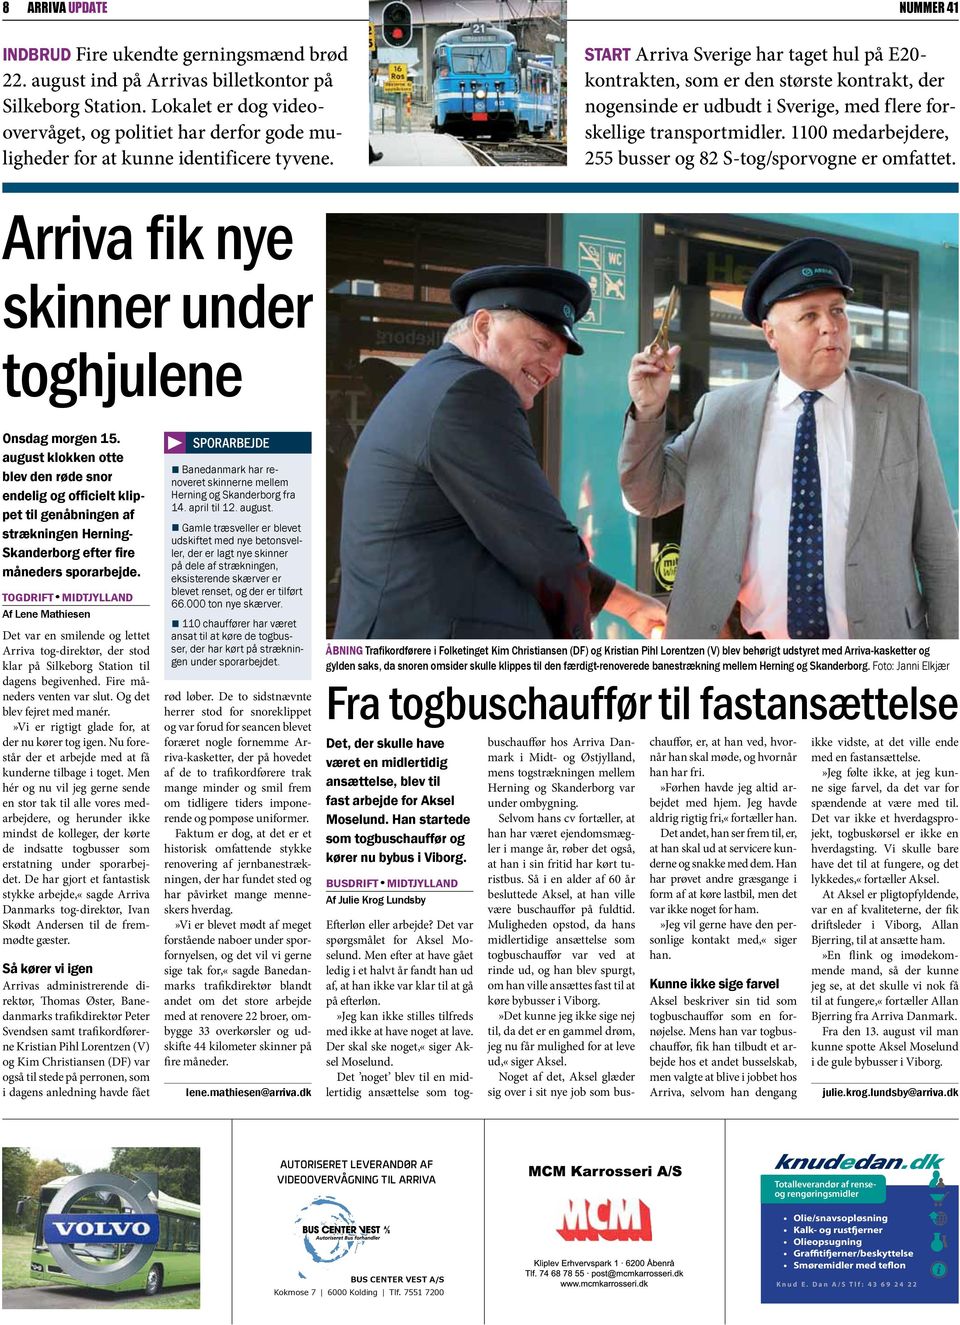 start Arriva Sverige har taget hul på E20- kontrakten, som er den største kontrakt, der nogensinde er udbudt i Sverige, med flere forskellige transportmidler.